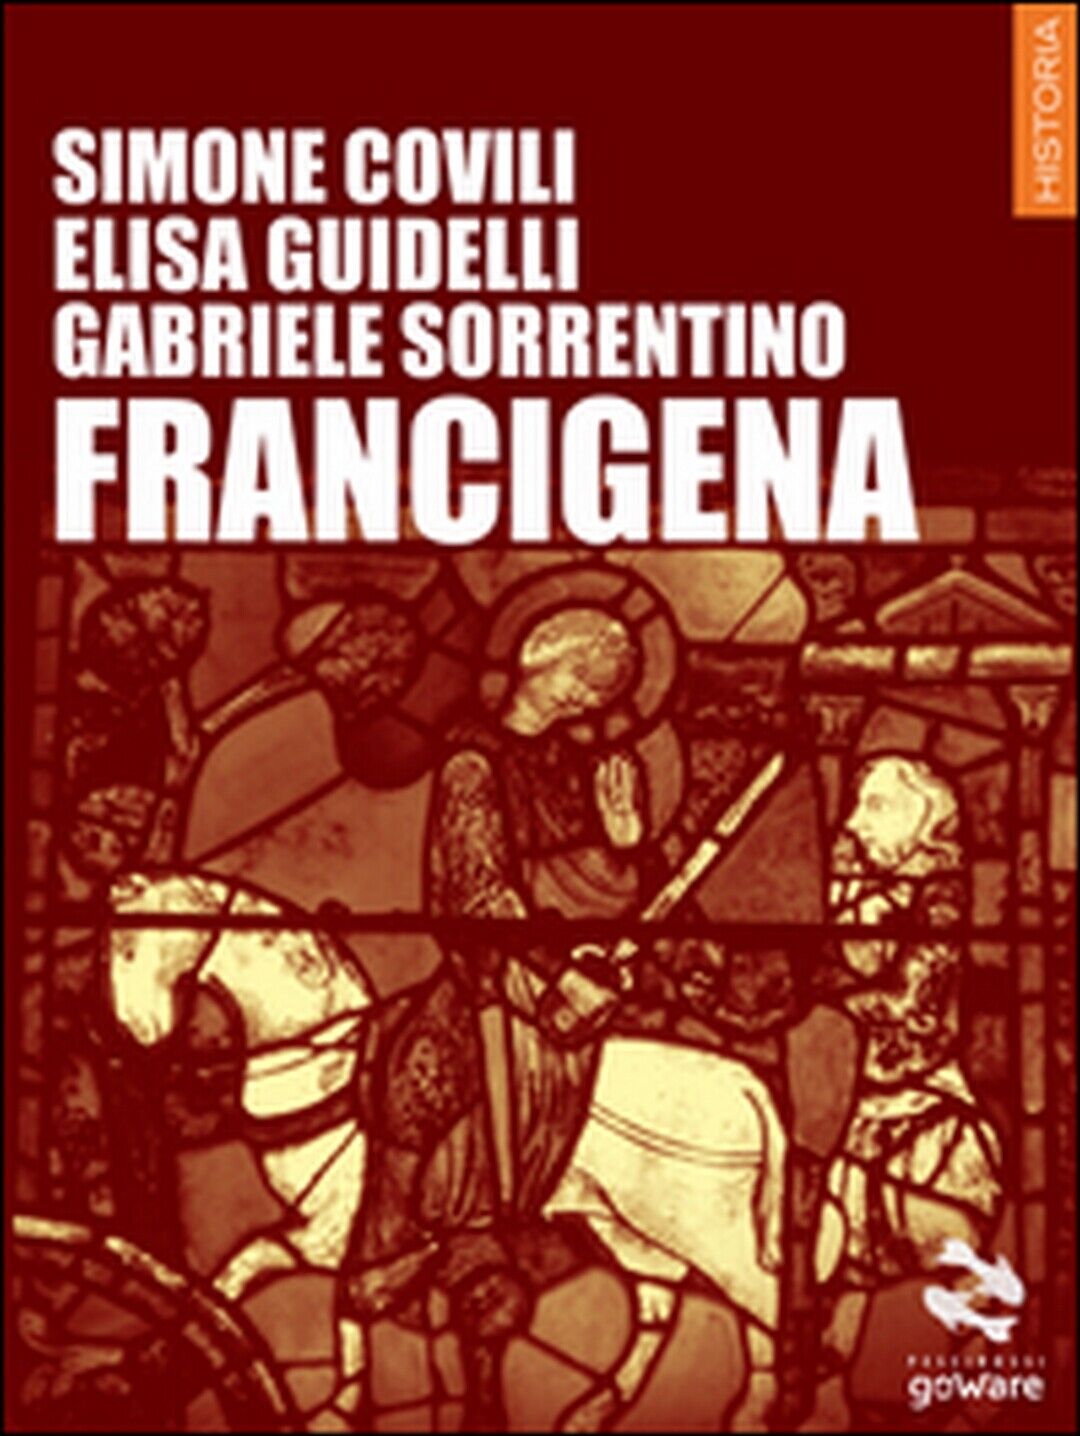 Francigena  di Simone Covili, Elisa Guidelli, Gabriele Sorrentino,  2015, Goware